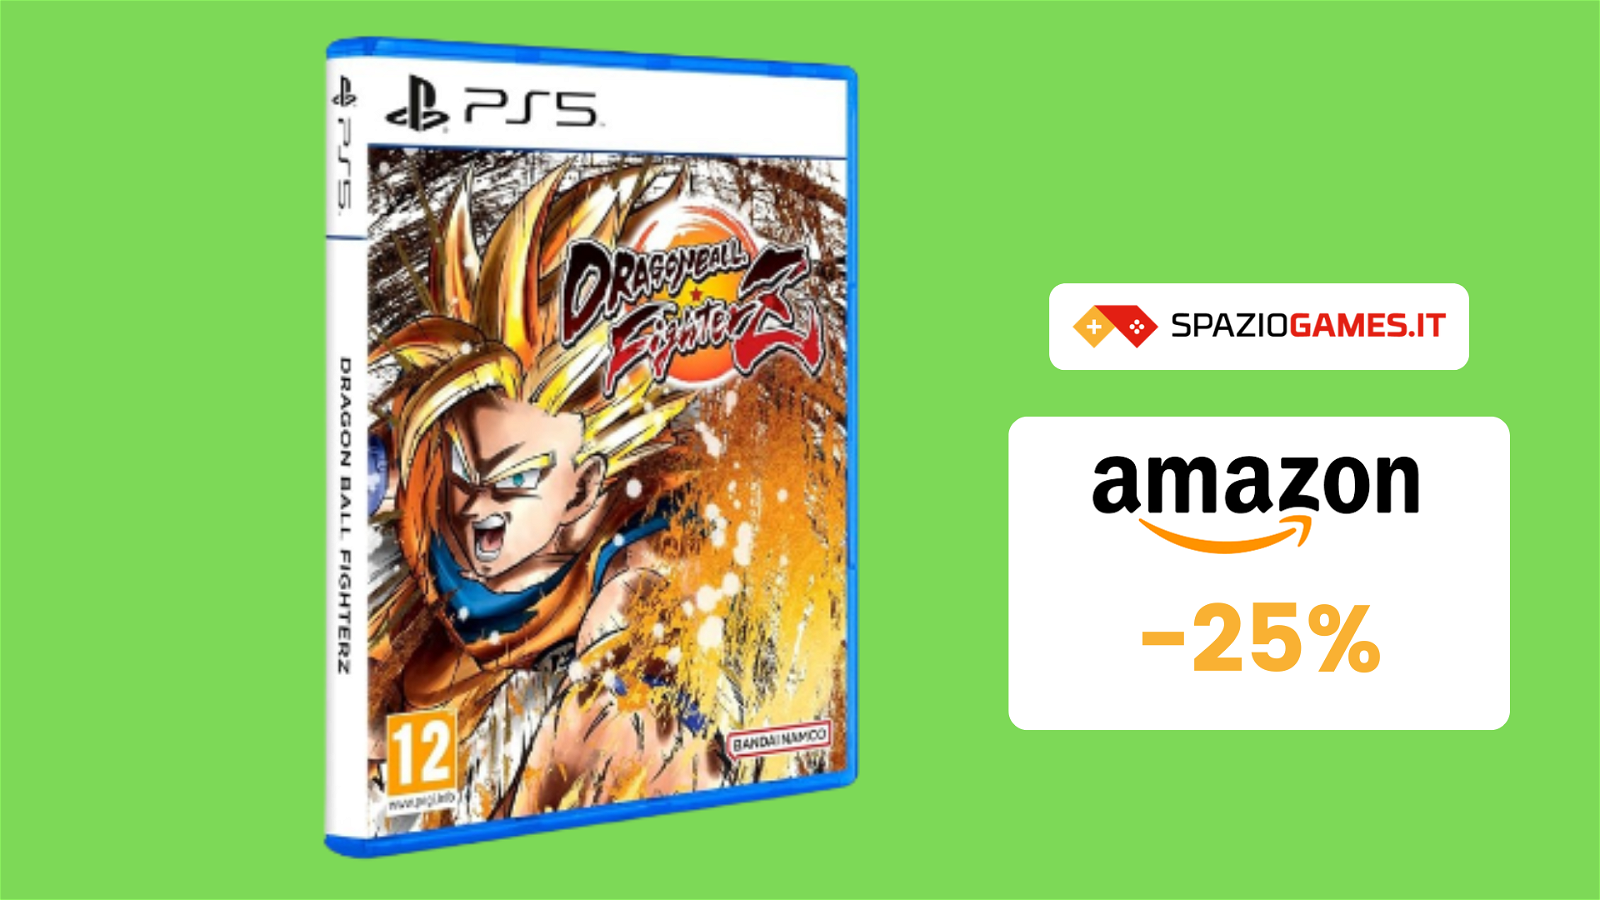 Dragon Ball FighterZ per PS5 a soli 15€ con grafica mozzafiato!